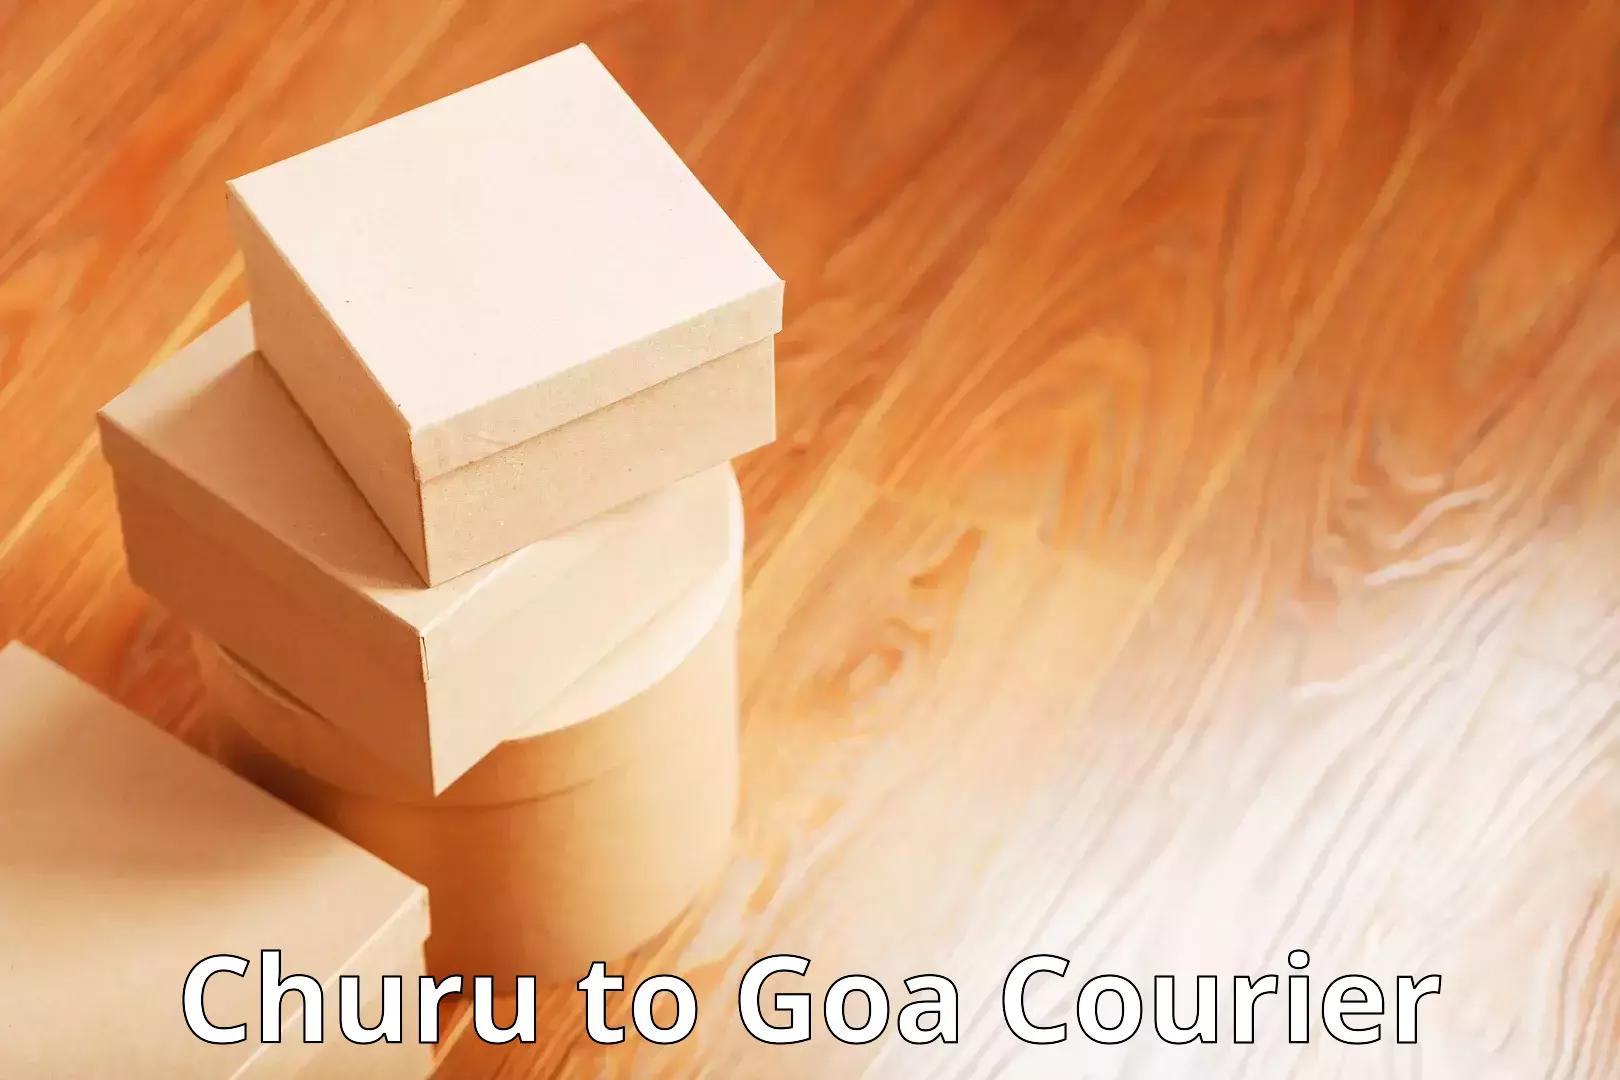 Cost-effective courier solutions Churu to IIT Goa